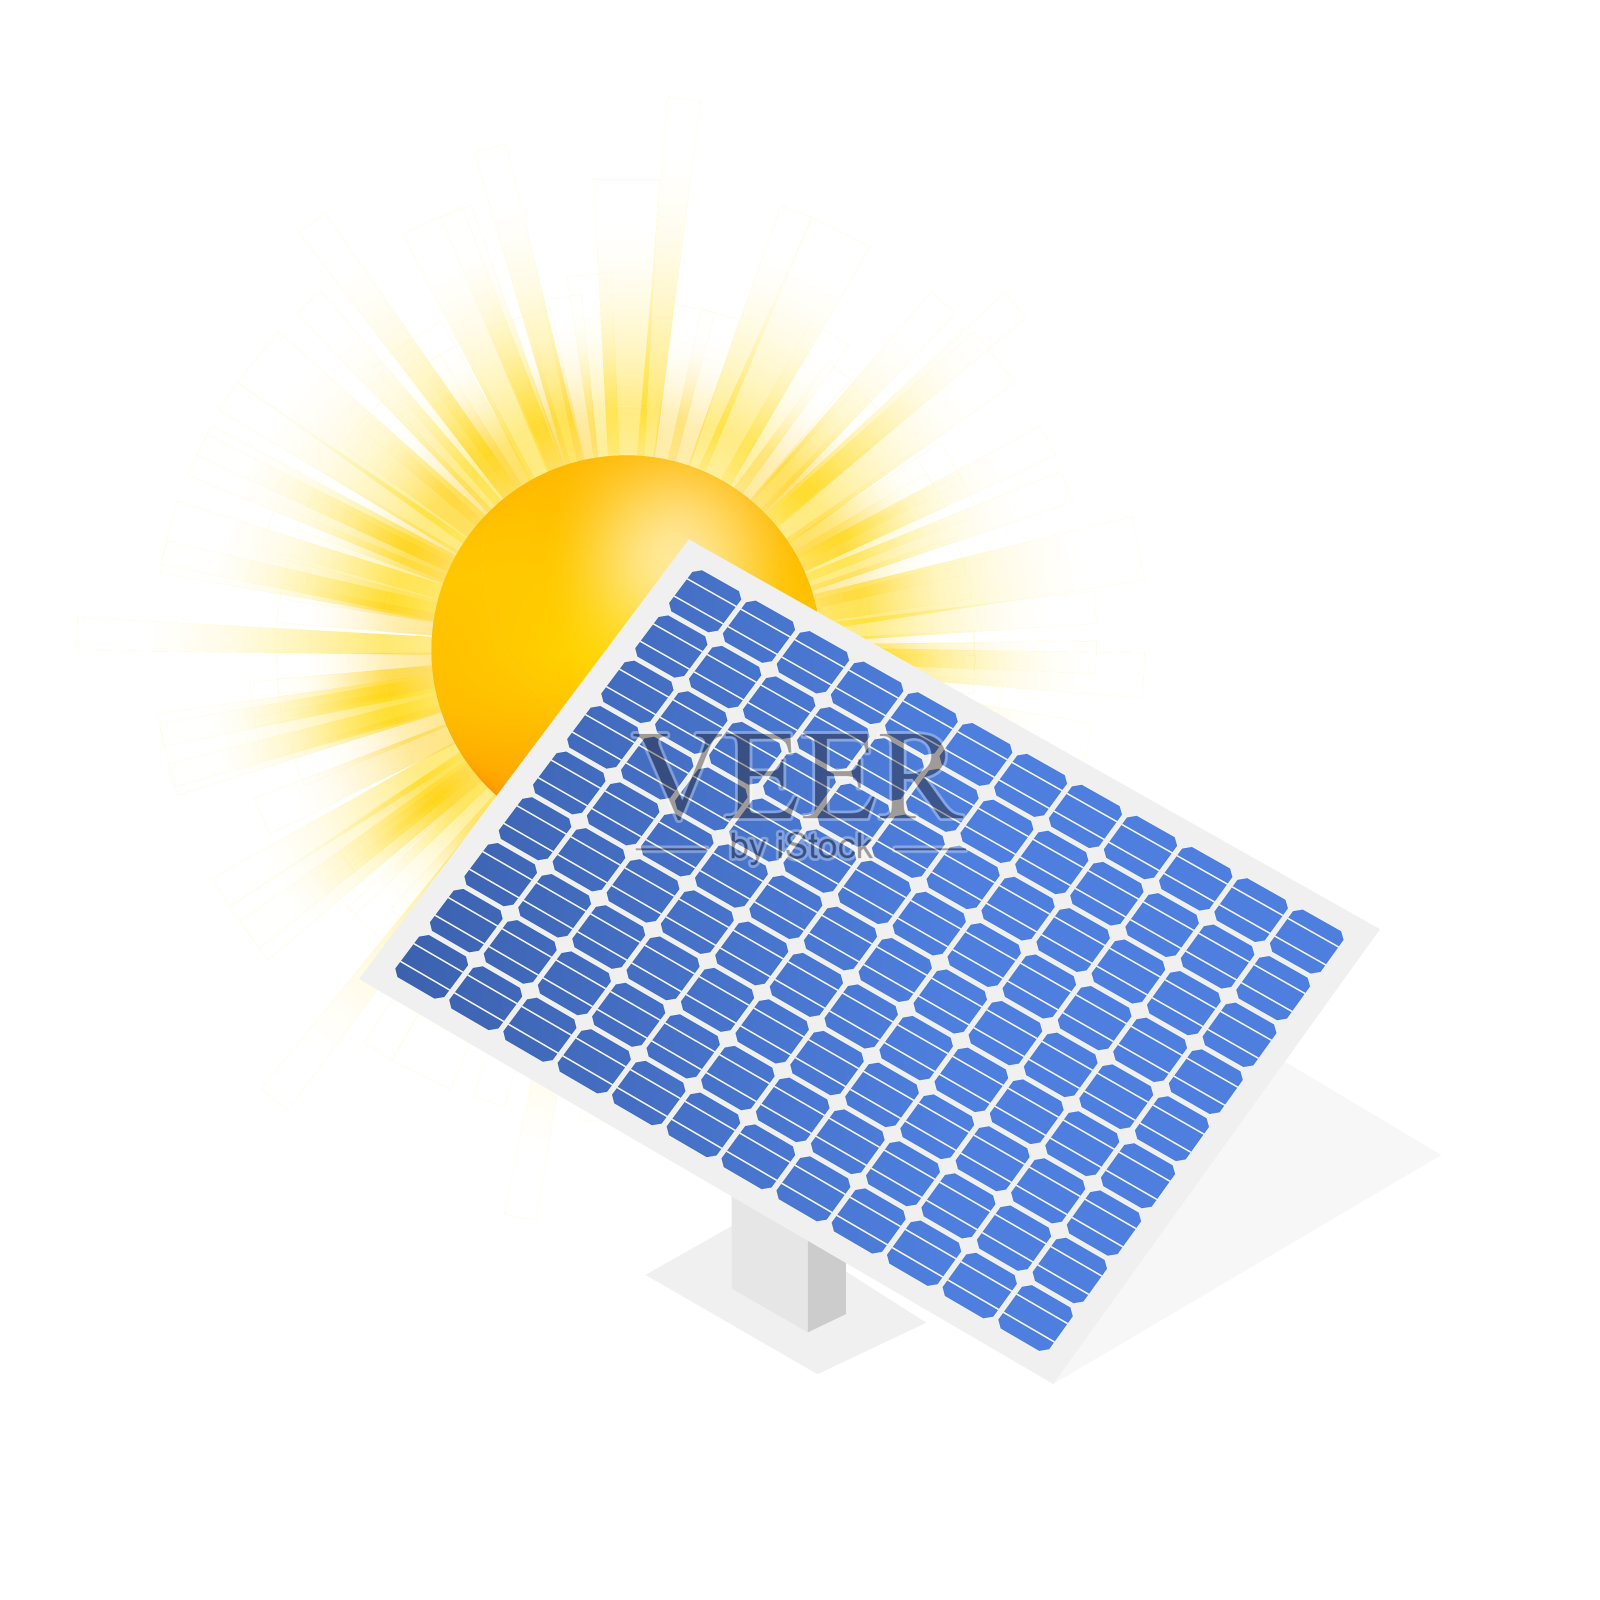 高度详细的太阳能电池板。现代替代生态绿色能源。矢量插图。插画图片素材